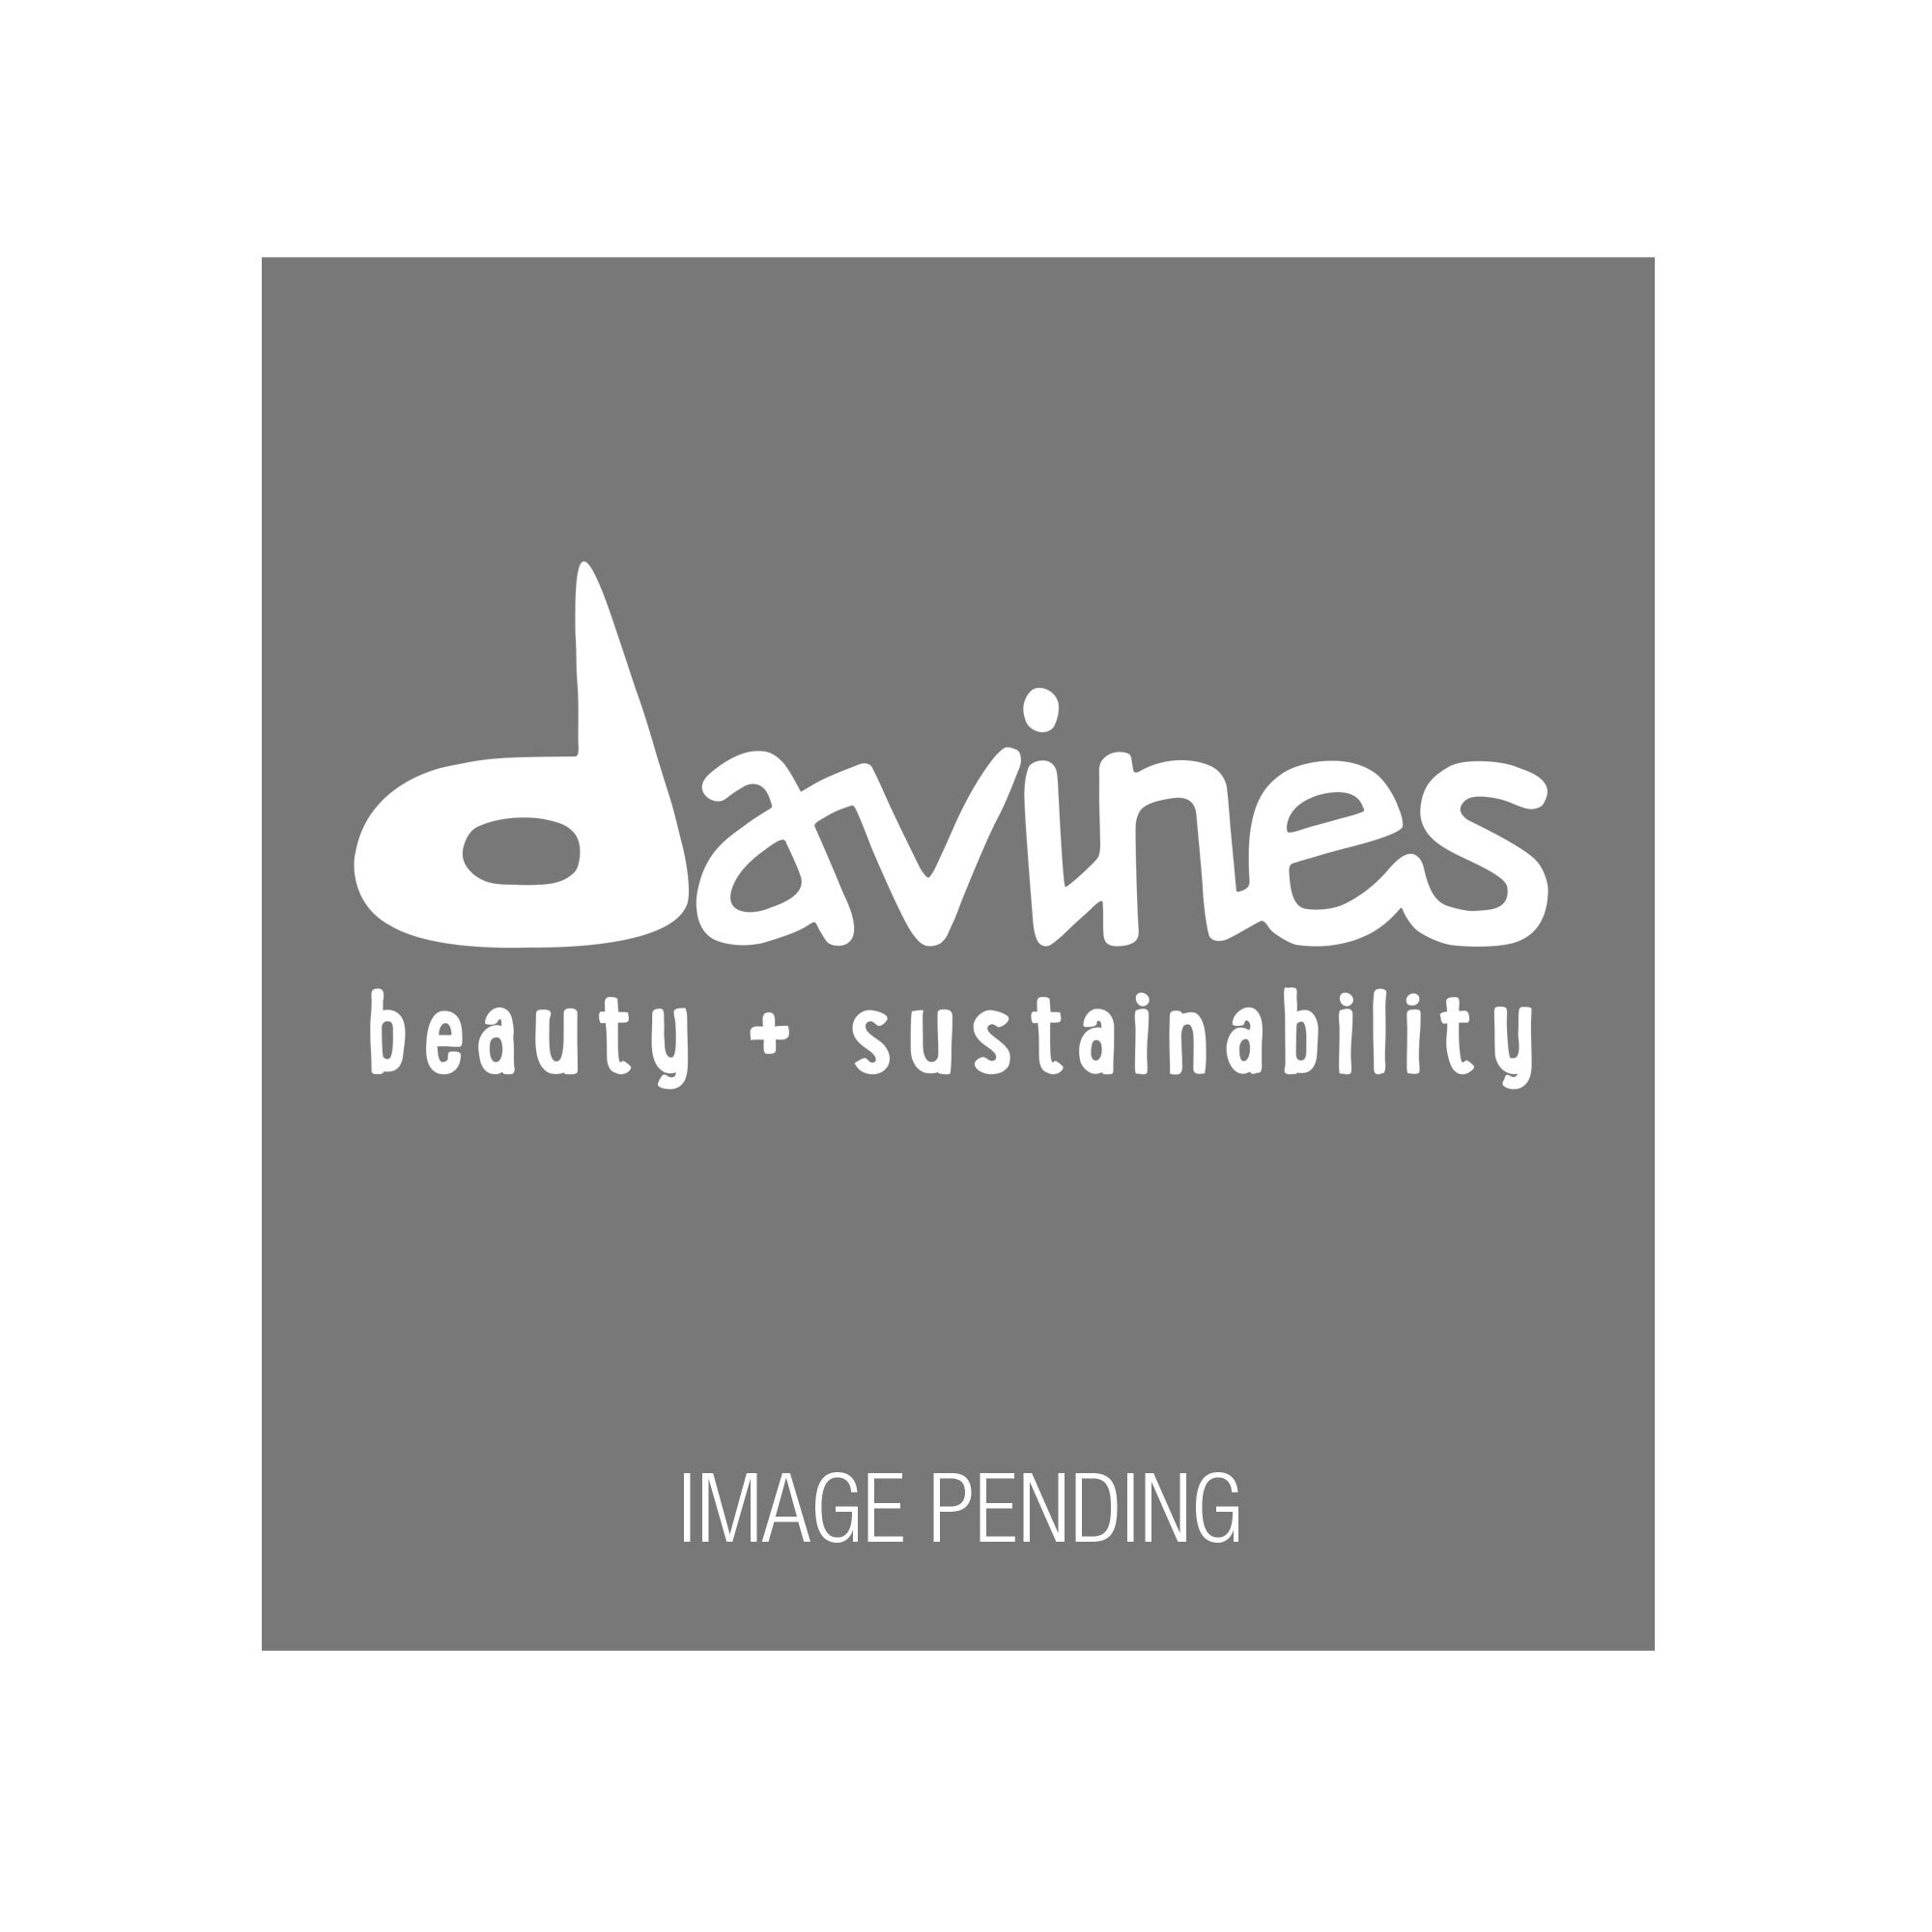 Davines Coastline Reflects Salon Guide